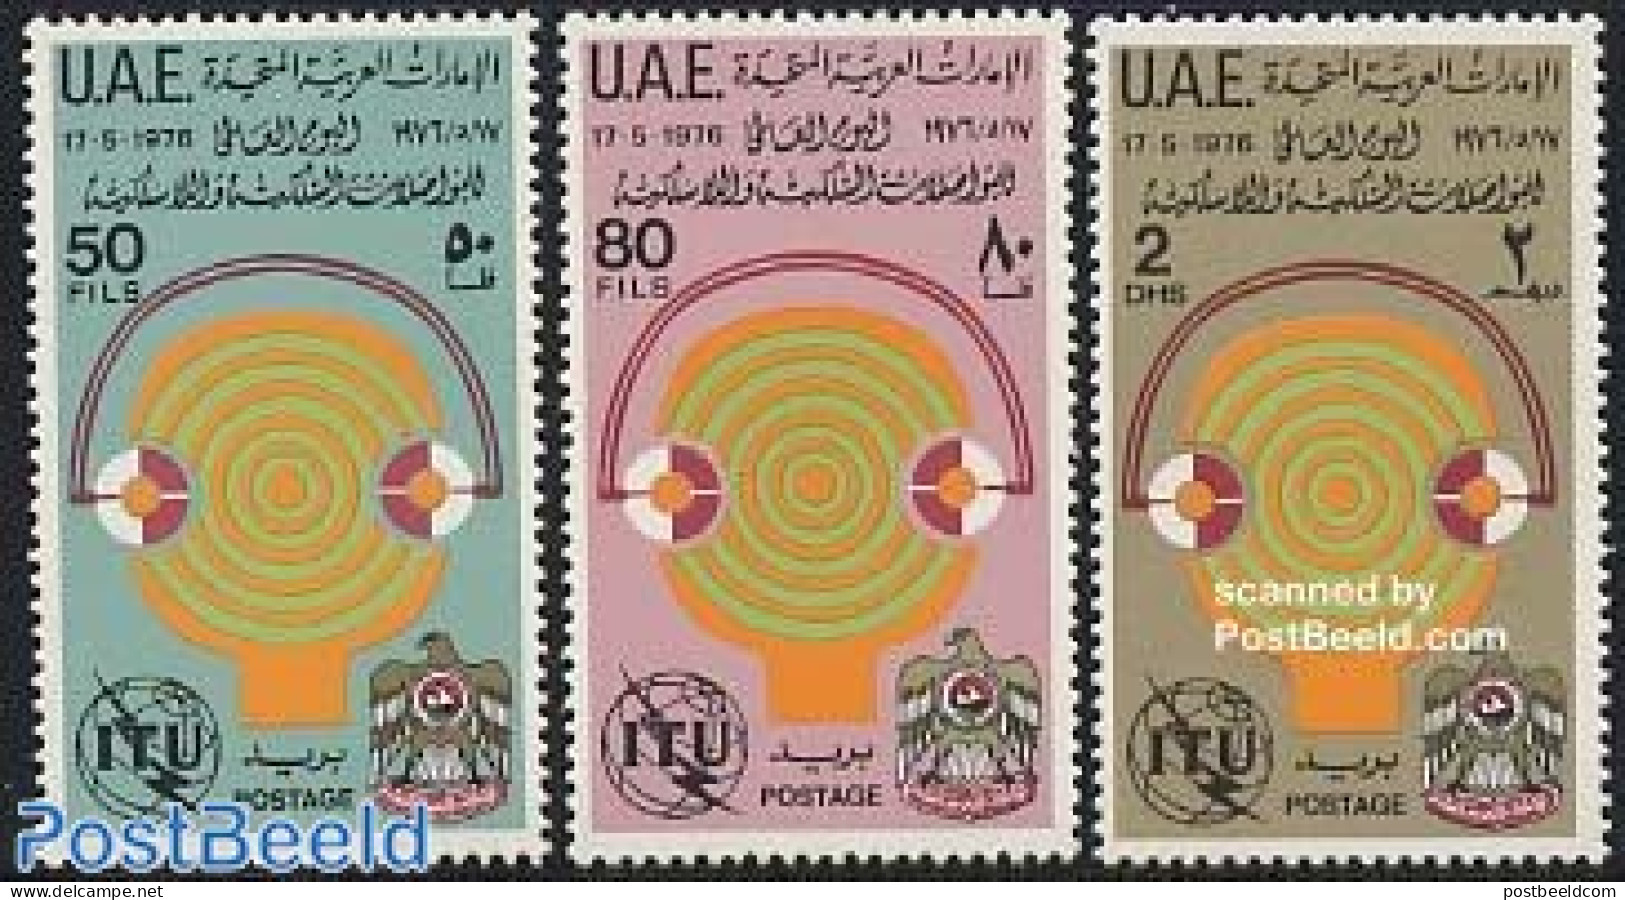 United Arab Emirates 1976 World Telecommunication Day 3v, Mint NH, Science - Telecommunication - Telecom